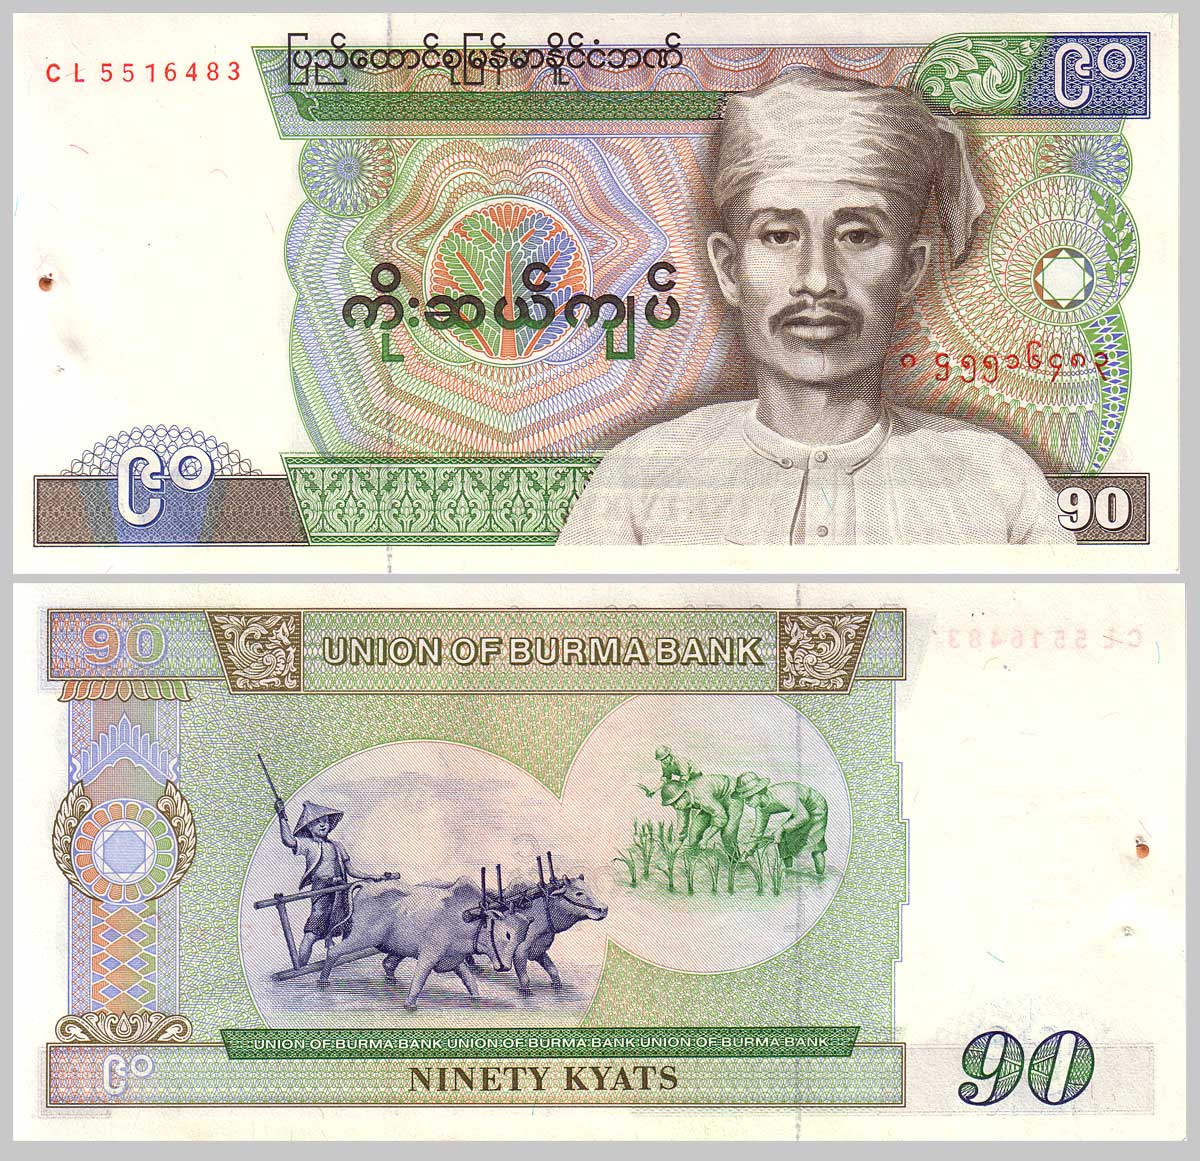 89 Kyat bill with Saya San.